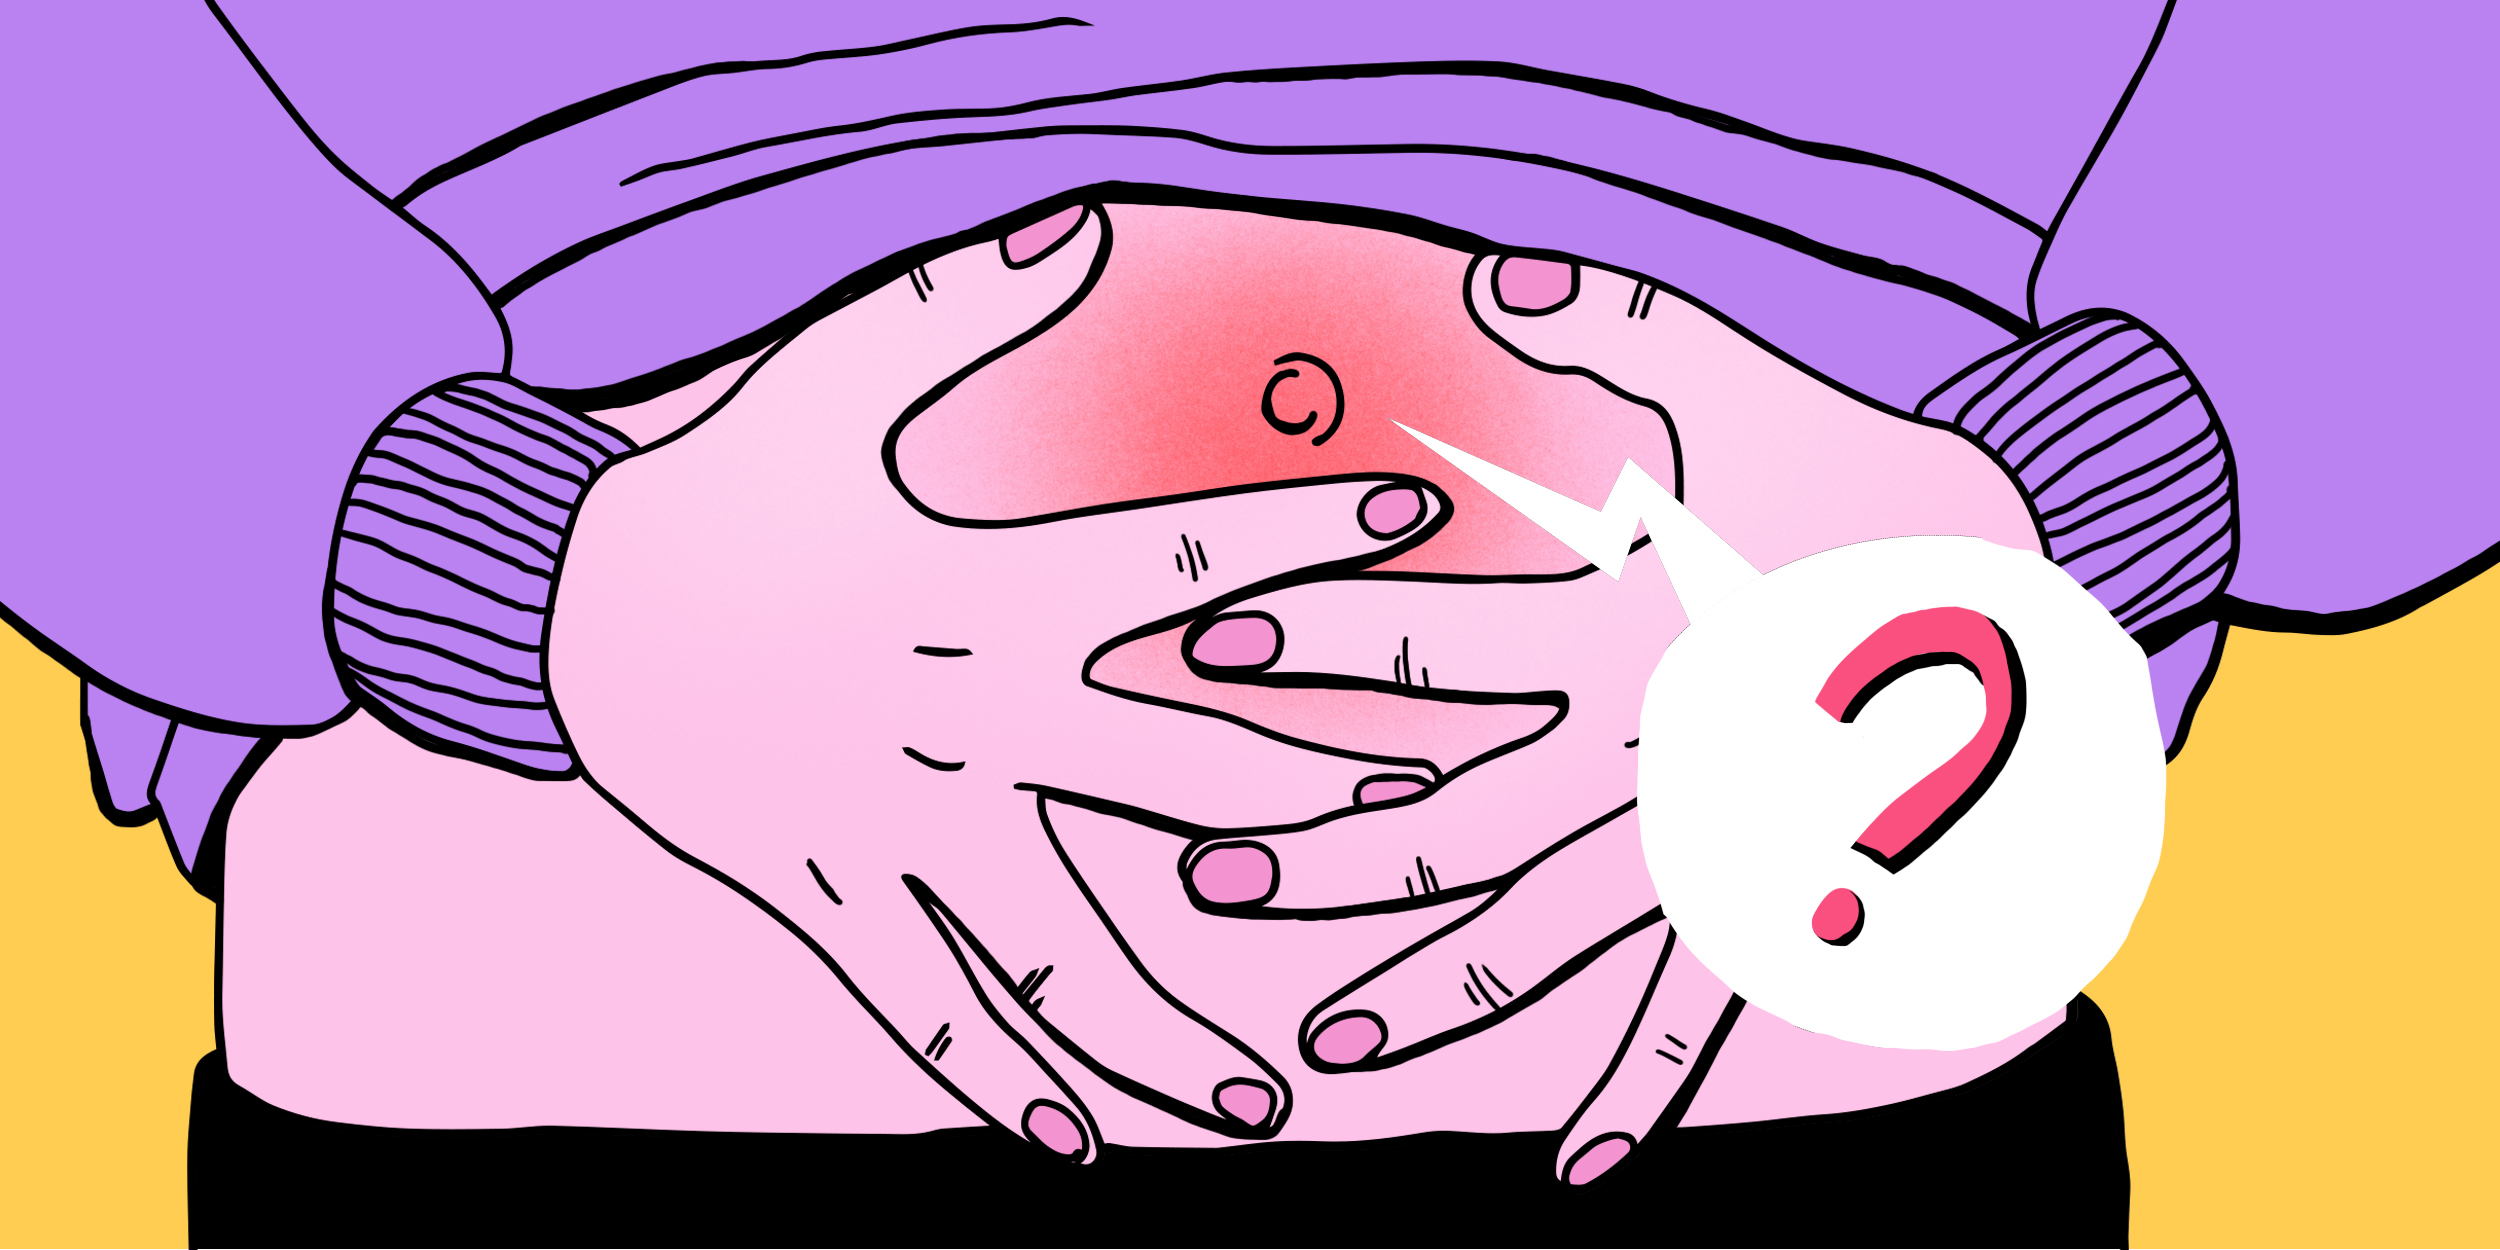 ЛАЙФХАК: как избавиться от боли при менструации